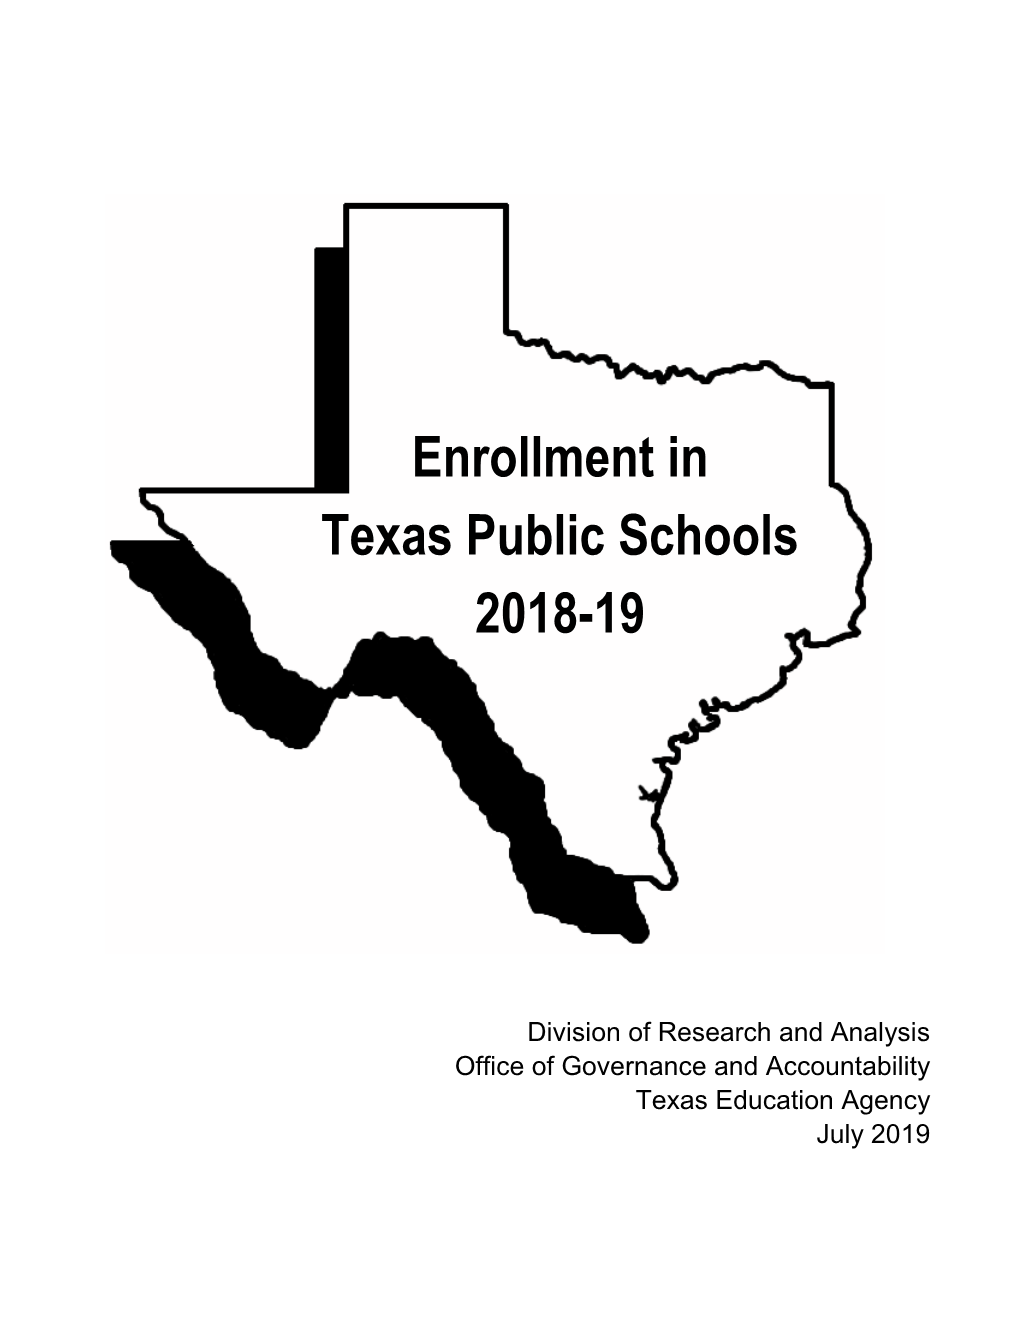 Enrollment in Texas Public Schools 2018-19